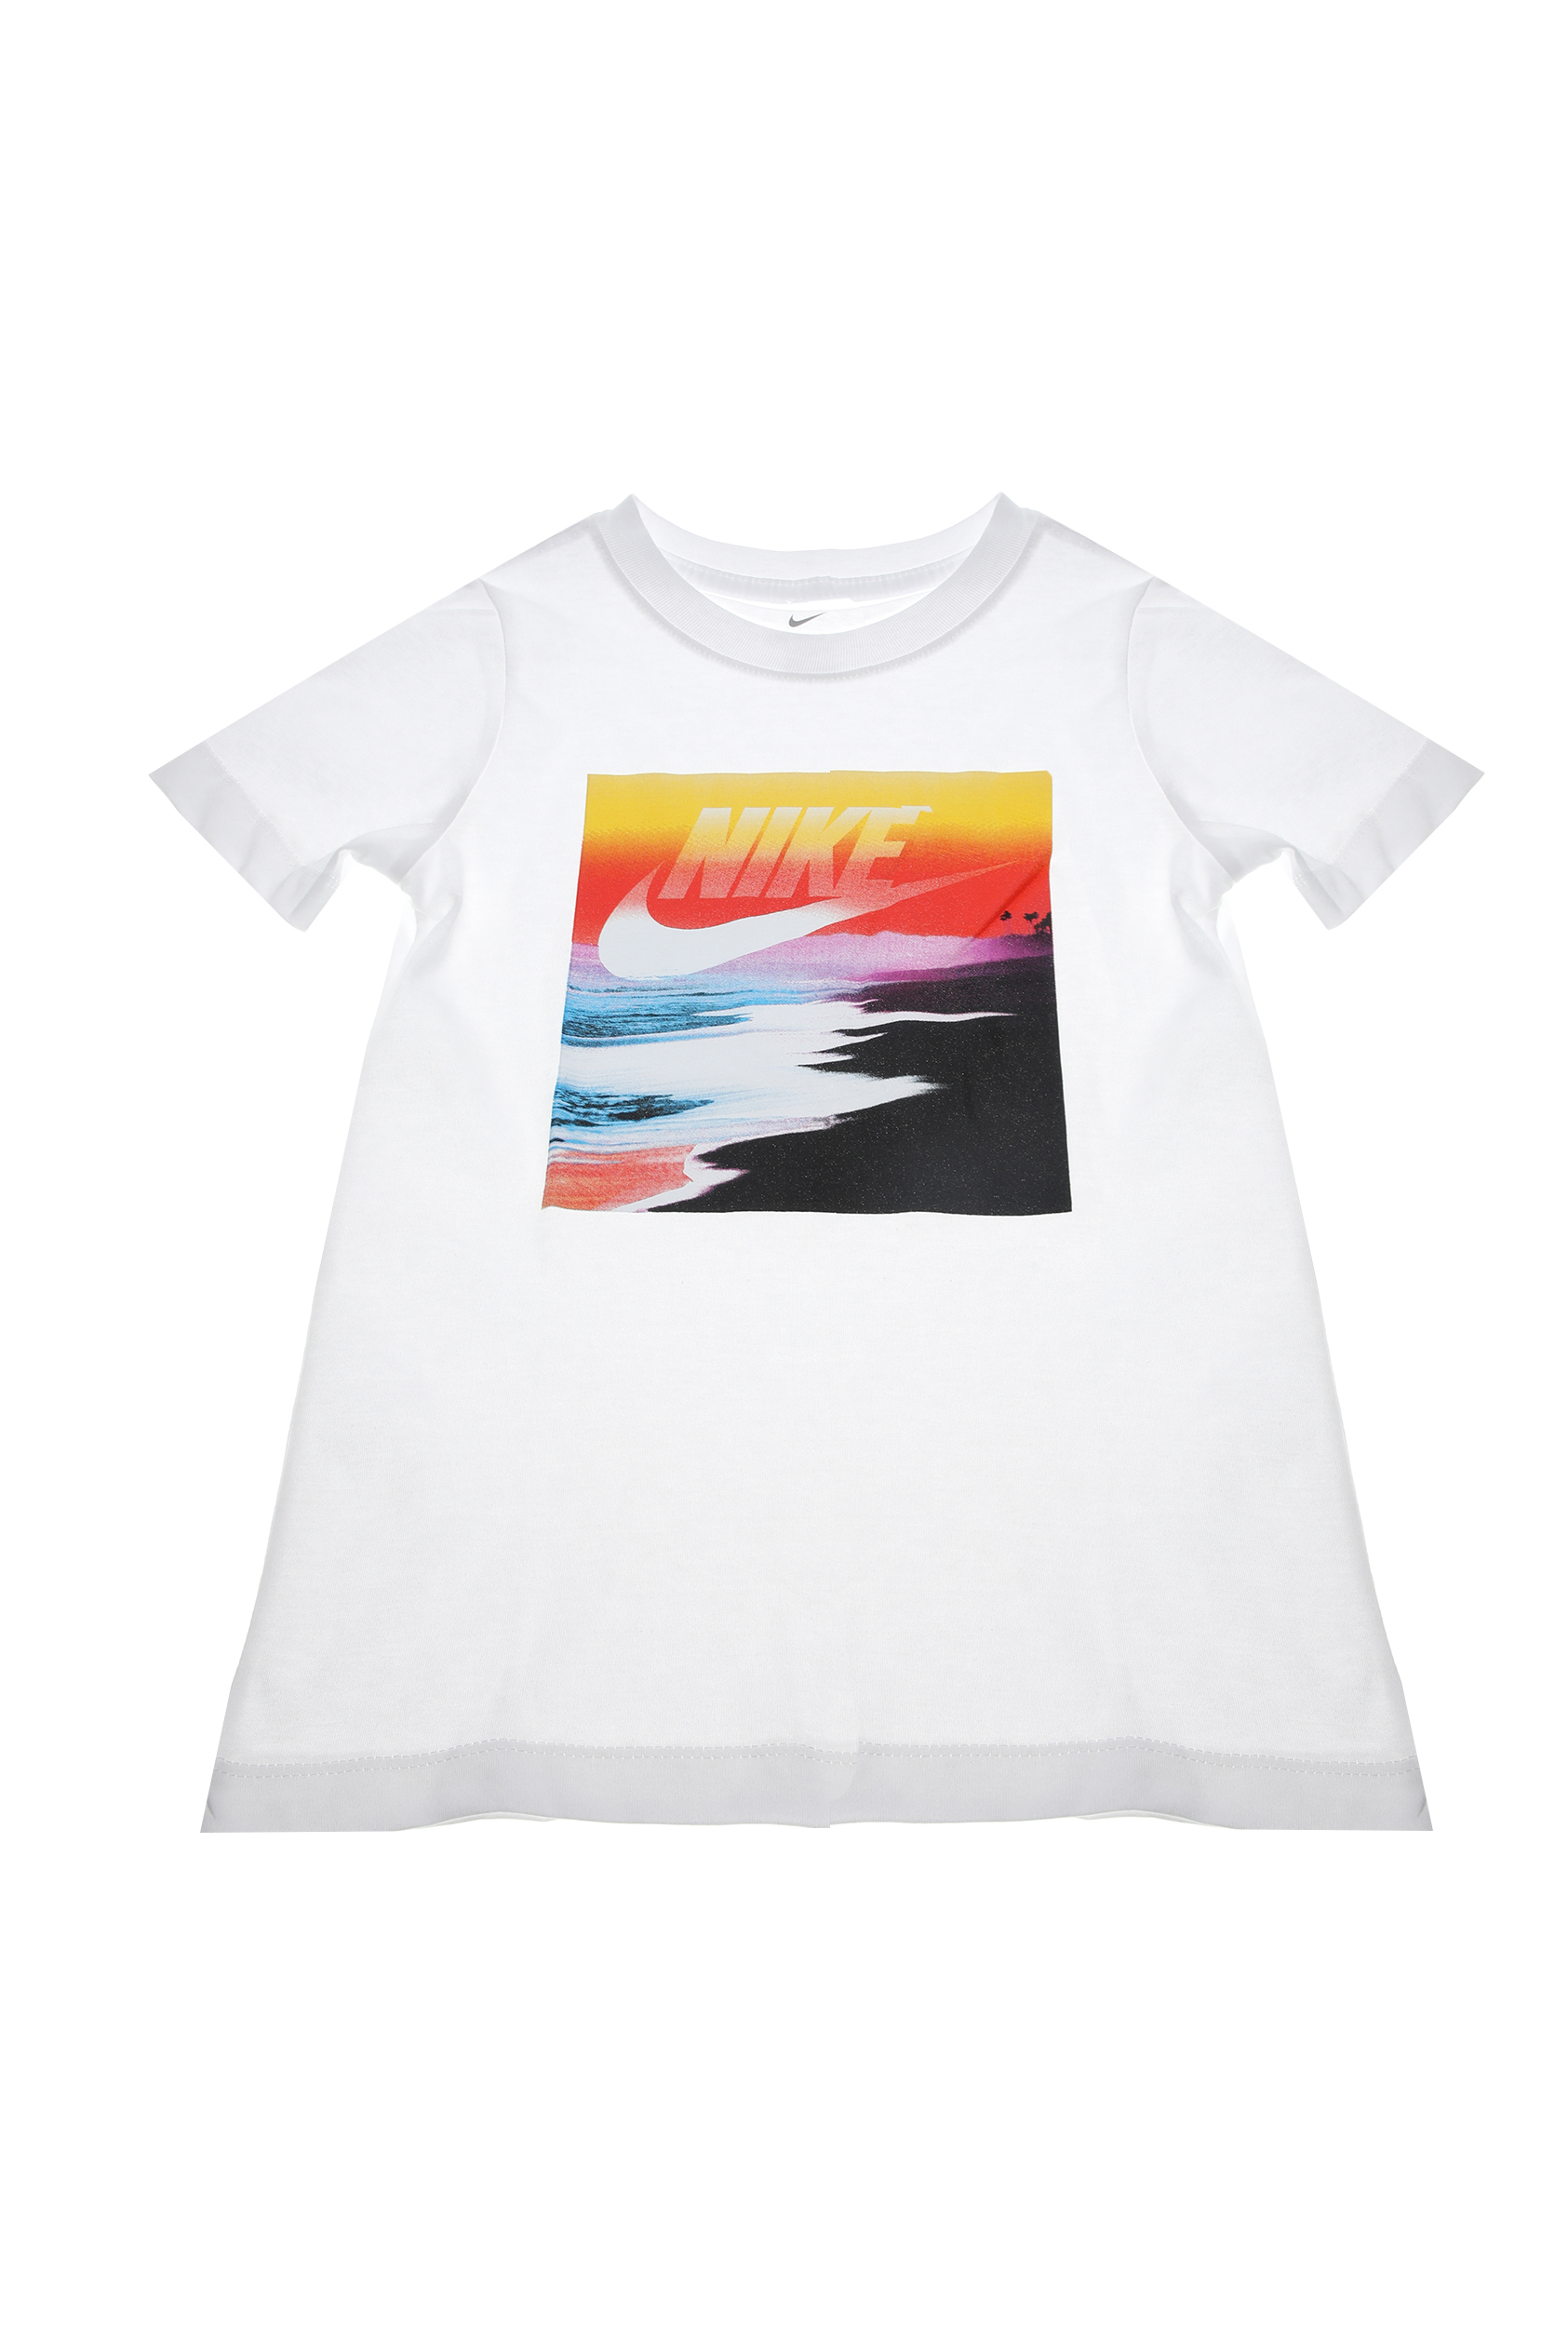 Παιδικά/Boys/Ρούχα/Αθλητικά NIKE - Παιδικό t-shirt NIKE NSW FUTURA BEACH λευκό